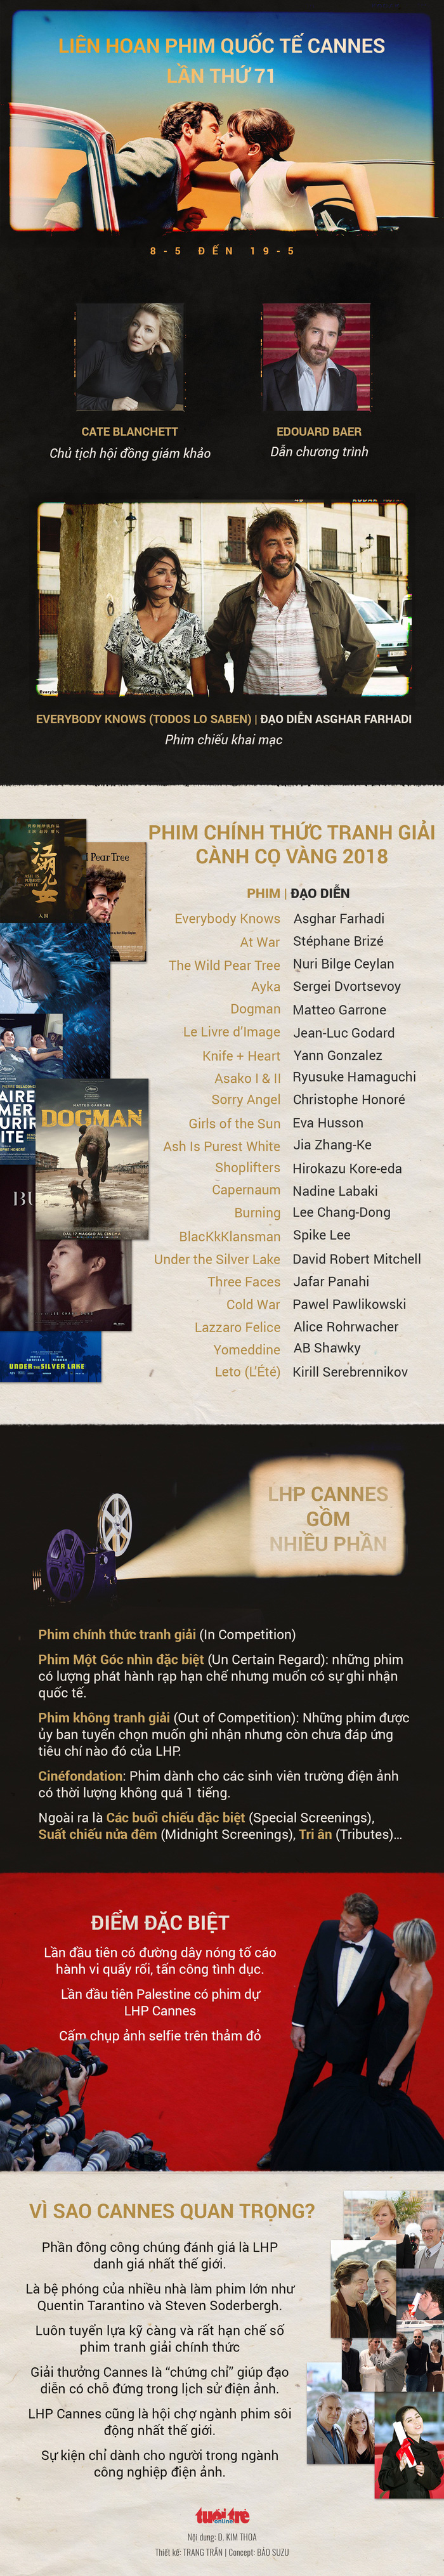 Asia Argento nhắc lại việc từng bị Harvey Weinstein hiếp ở Cannes - Ảnh 5.